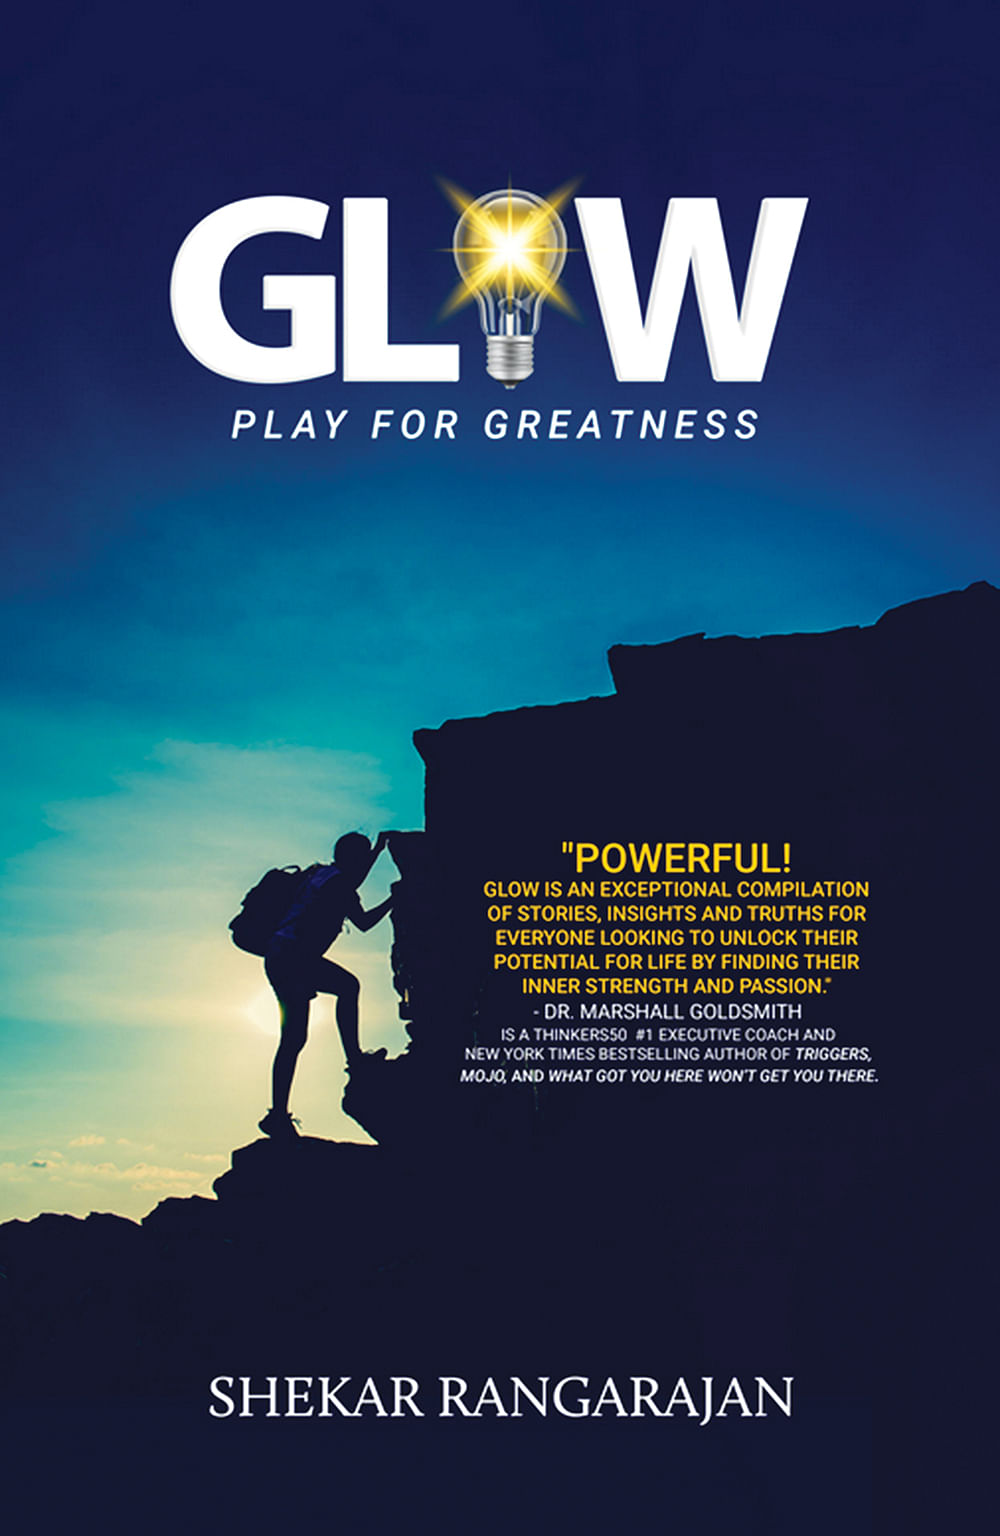 புத்தகத்தின் பெயர்:
 Glow: Play For Greatness
ஆசிரியர்: 
சேகர் ரங்கராஜன்
பதிப்பகம்:‎ 
Stardom Books 
(10 February 2022)